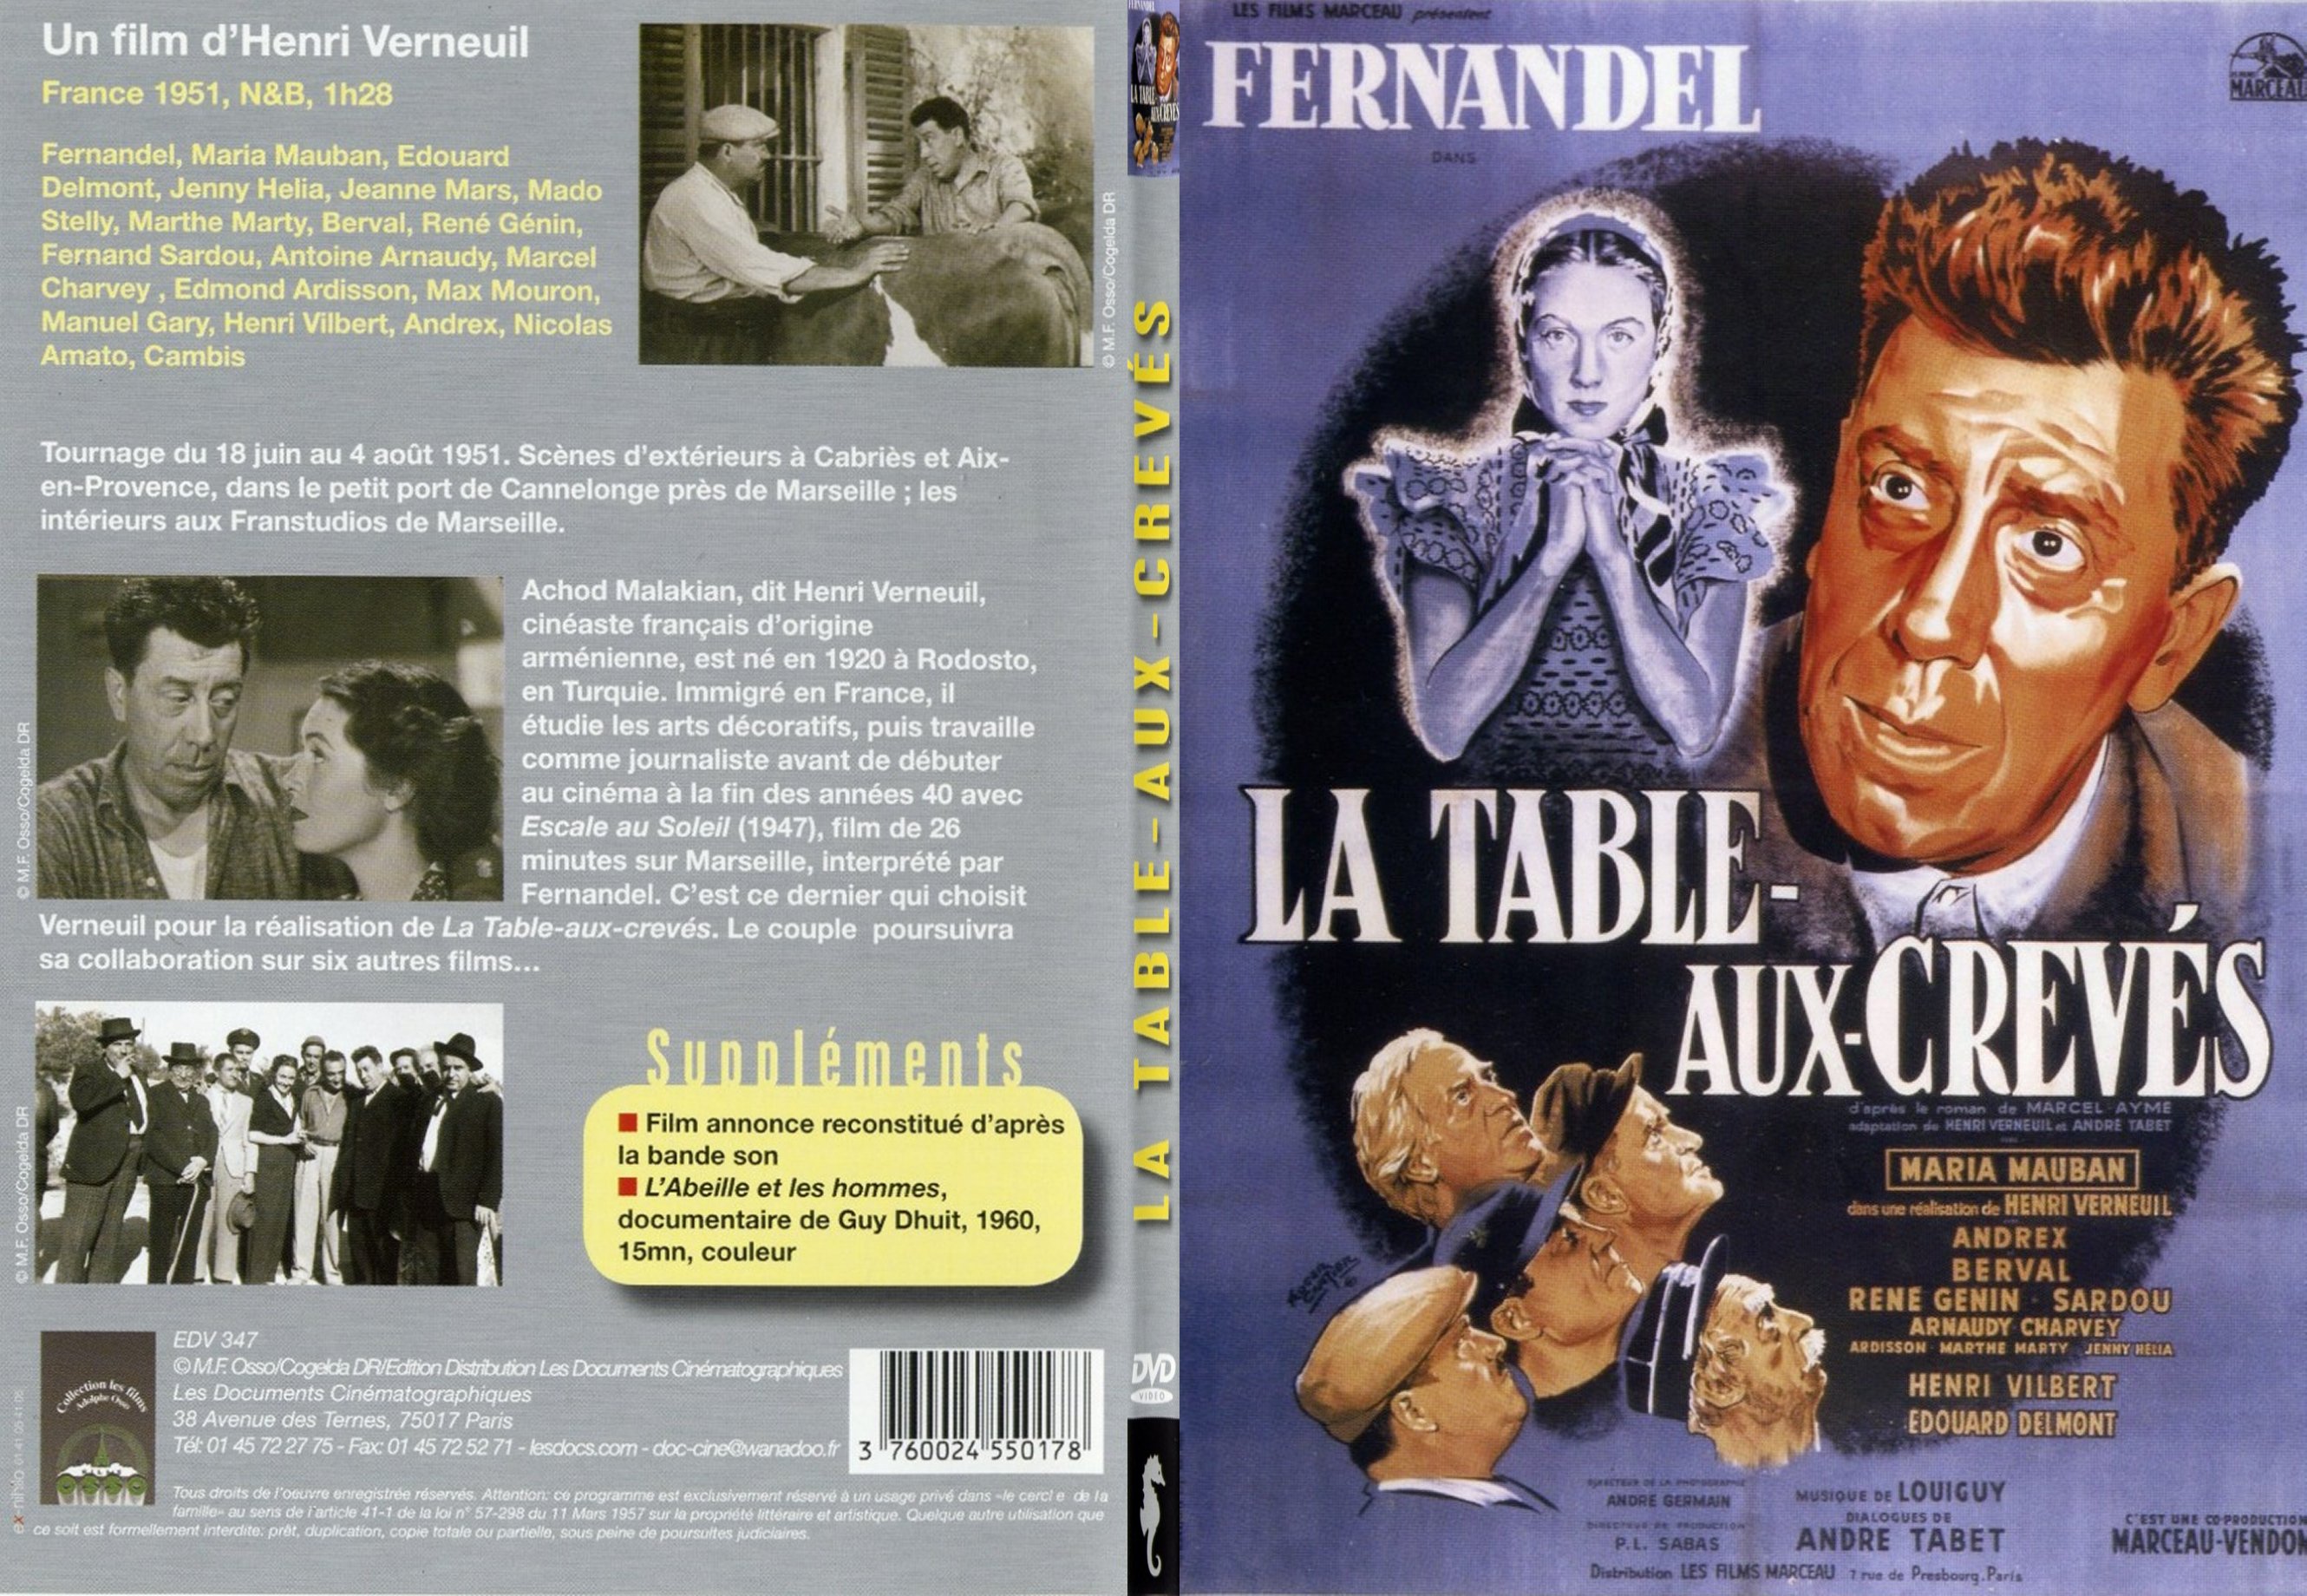 Jaquette DVD La table aux crevs - SLIM